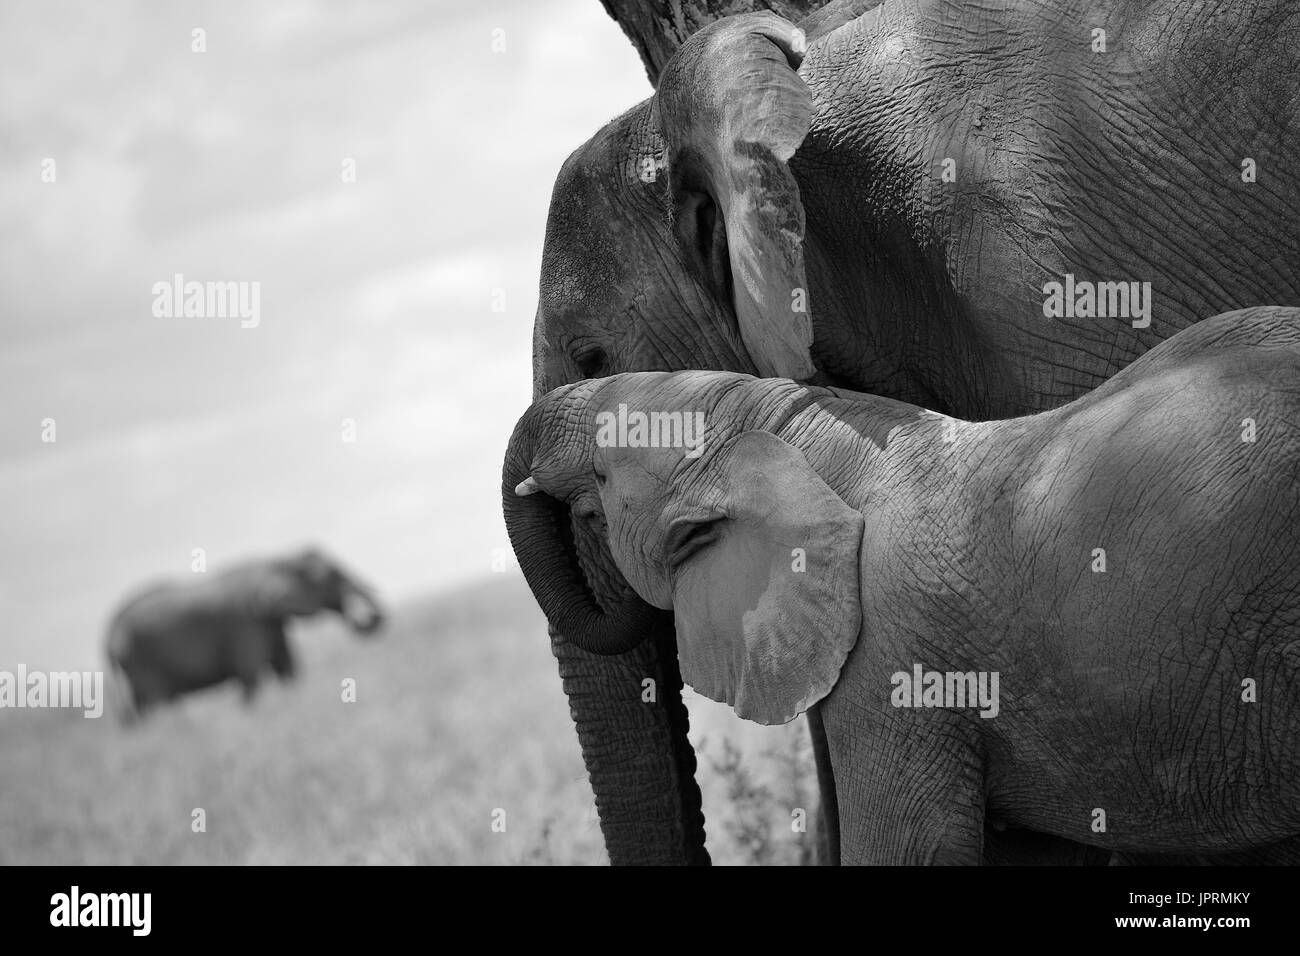 Los elefantes deambulan por las llanuras del Serengeti Foto de stock